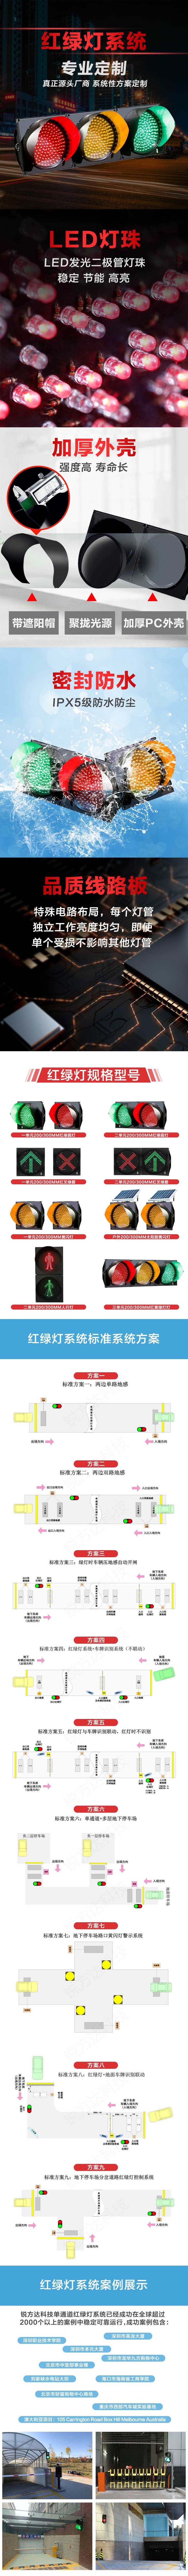 单车道红绿灯控制系统